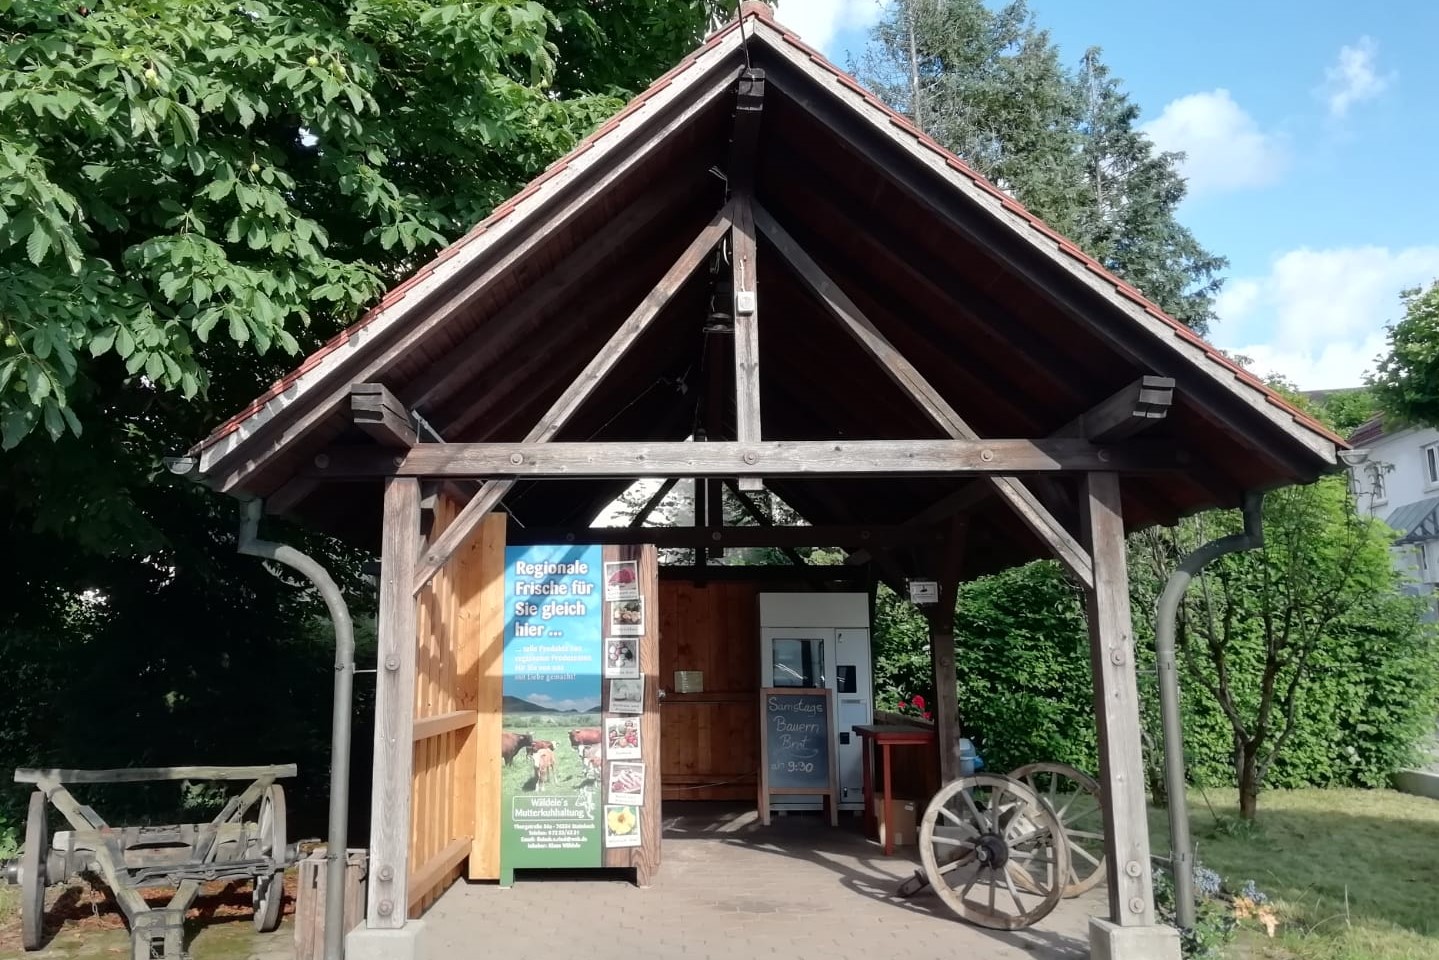 Verkaufsautomat und Kühltruhe, Jennifer Lahoux-Wäldele, Baden-Baden